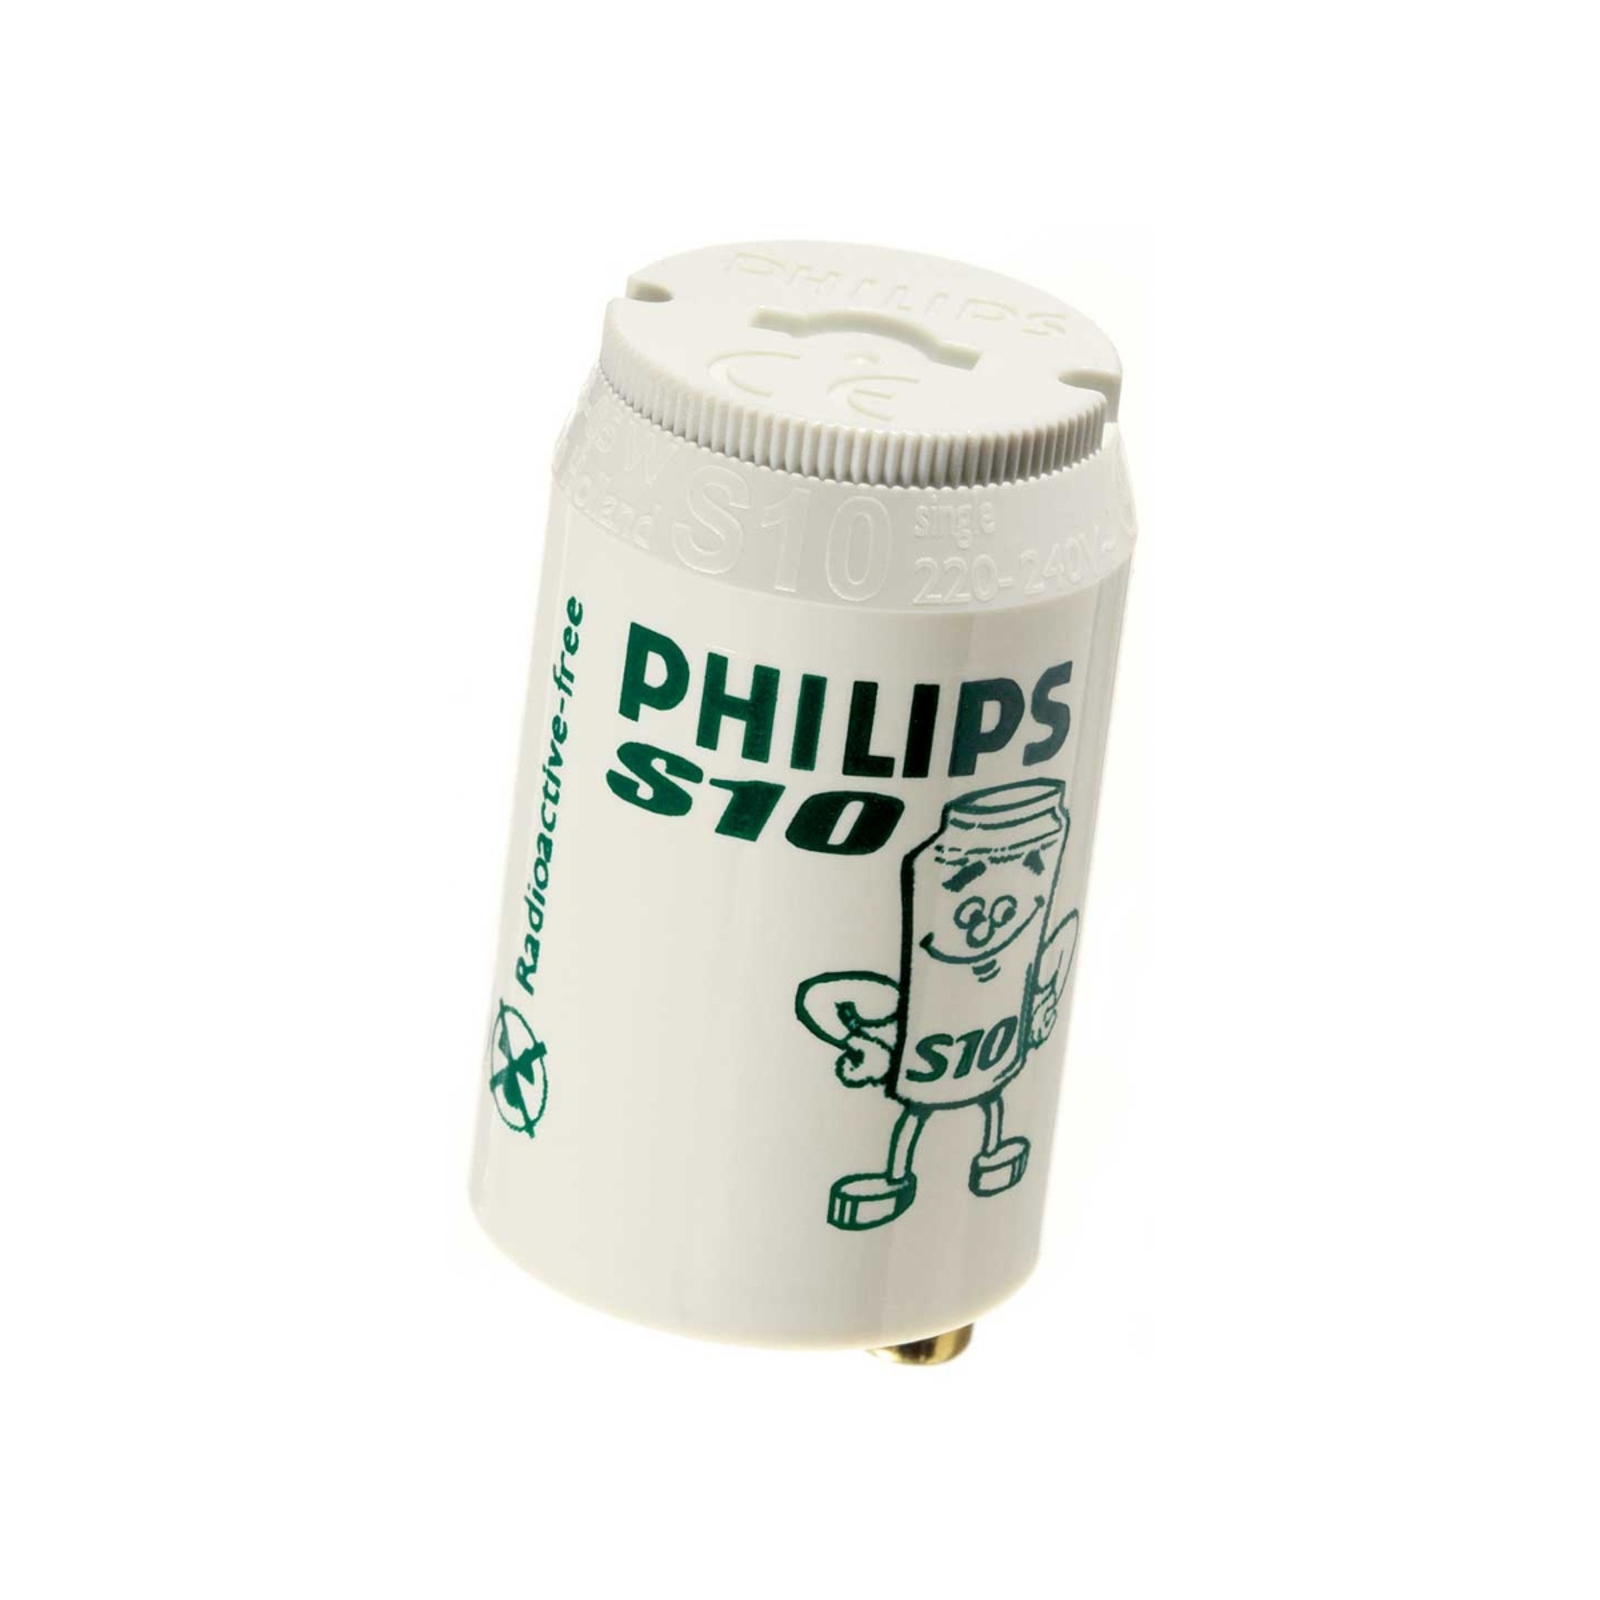 Starter per lampadine a fluorescenza S10 - Philips